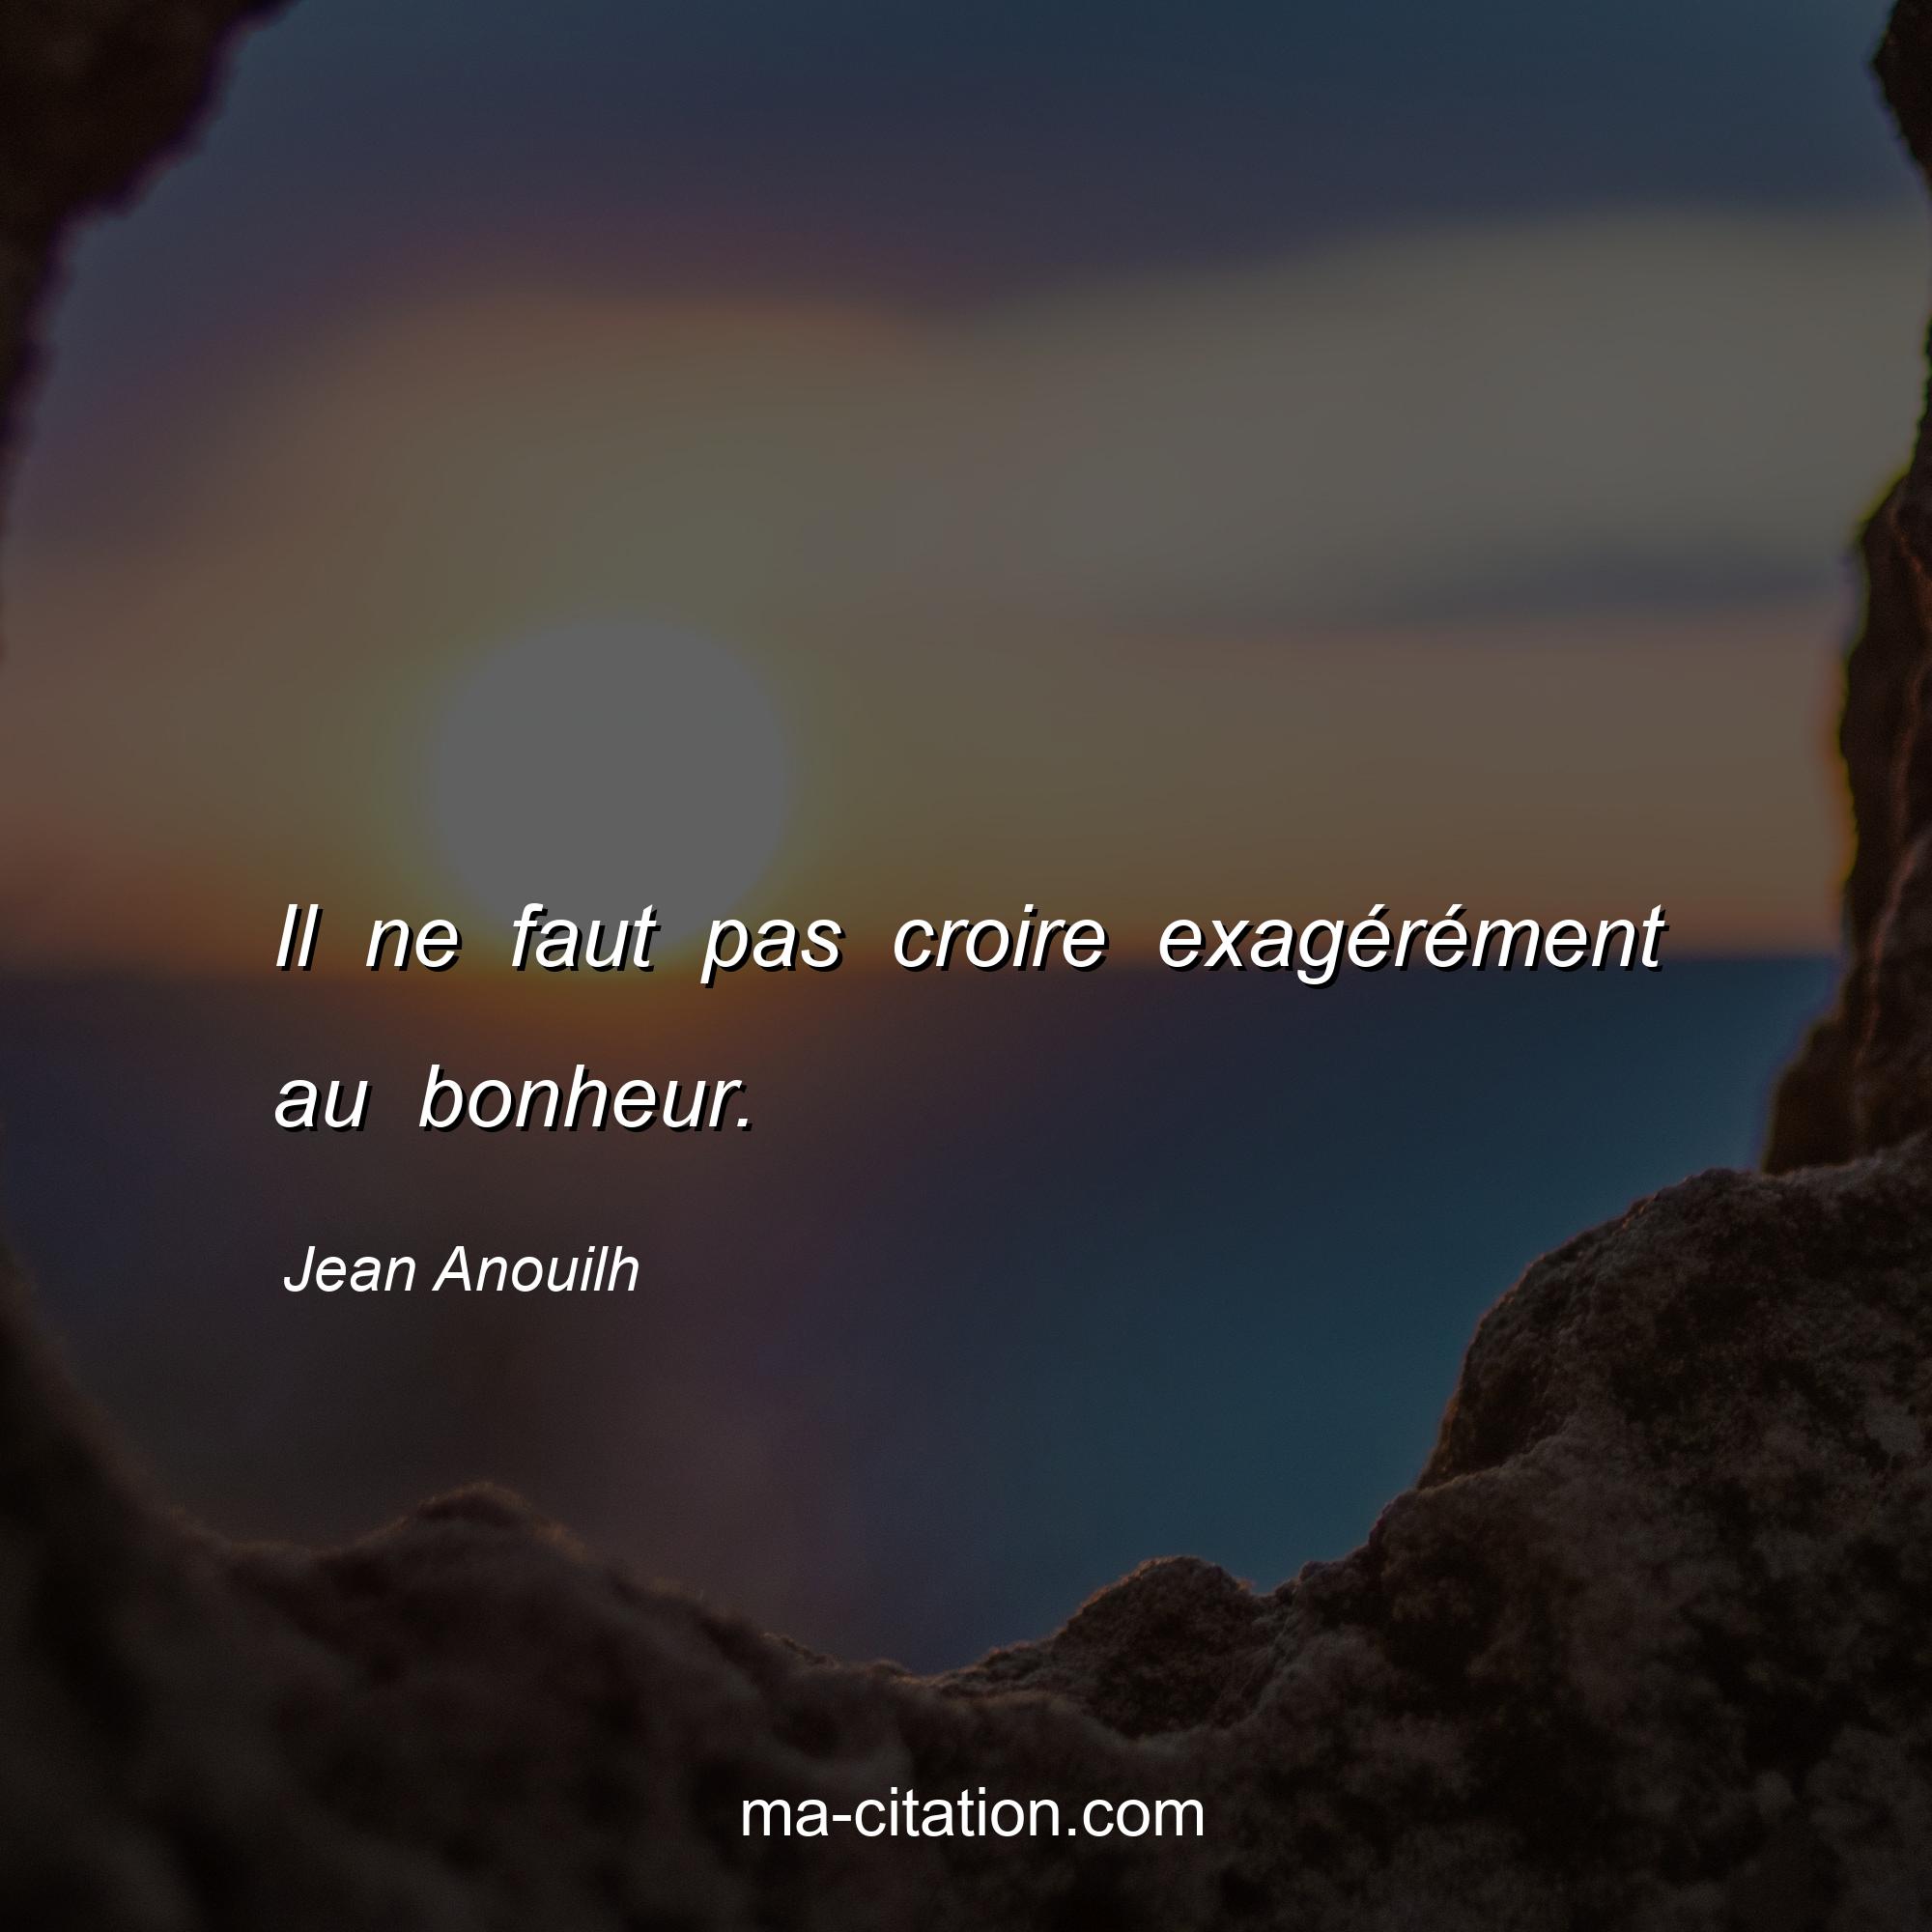 Jean Anouilh : Il ne faut pas croire exagérément au bonheur.